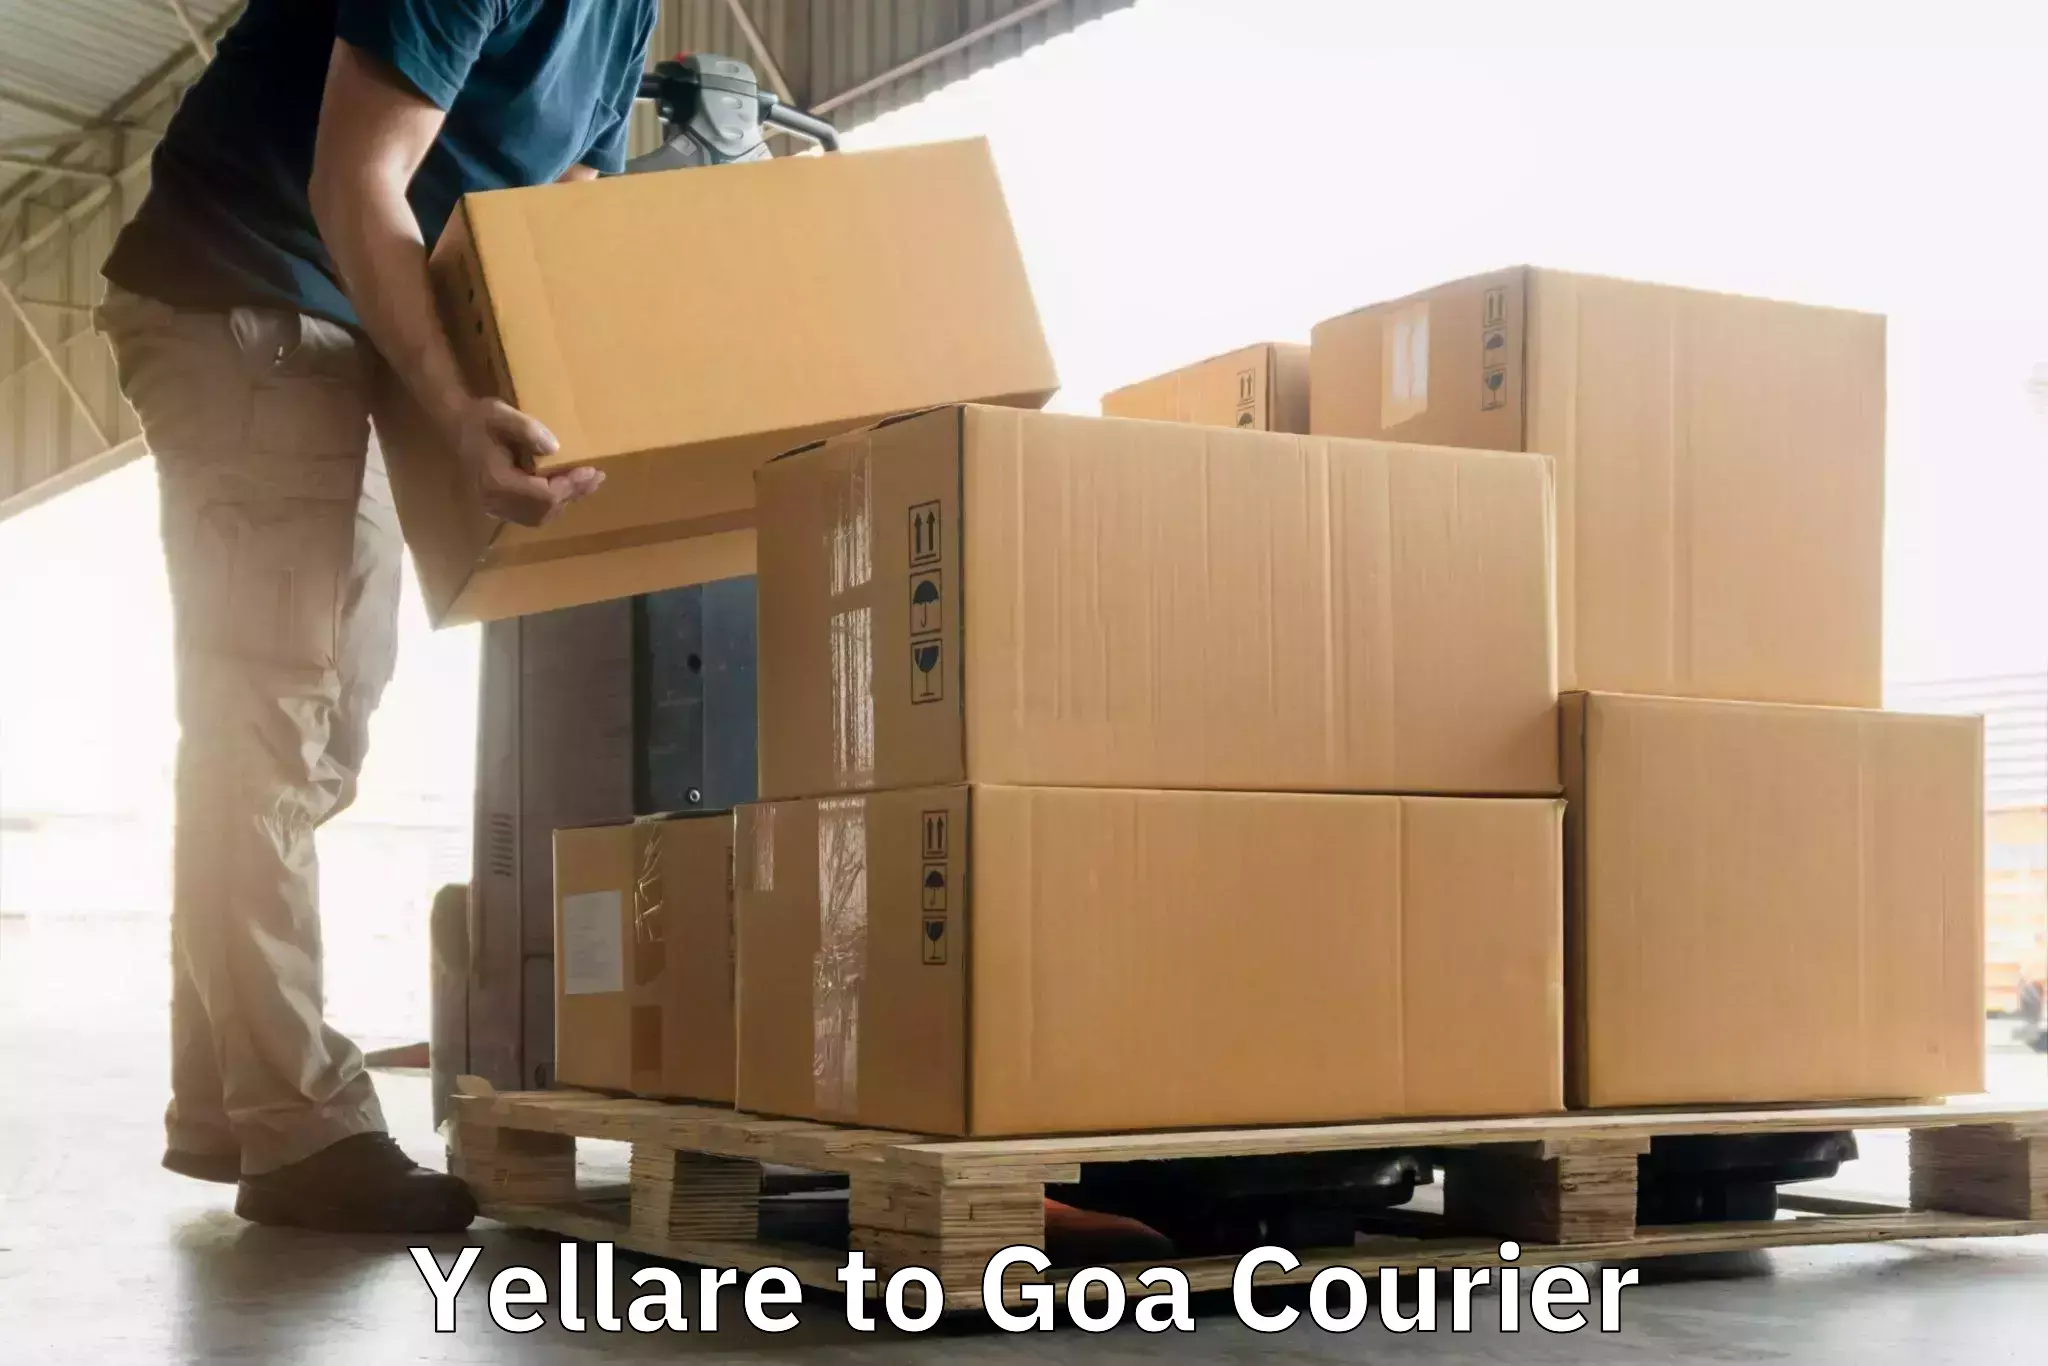 Courier service comparison Yellare to IIT Goa